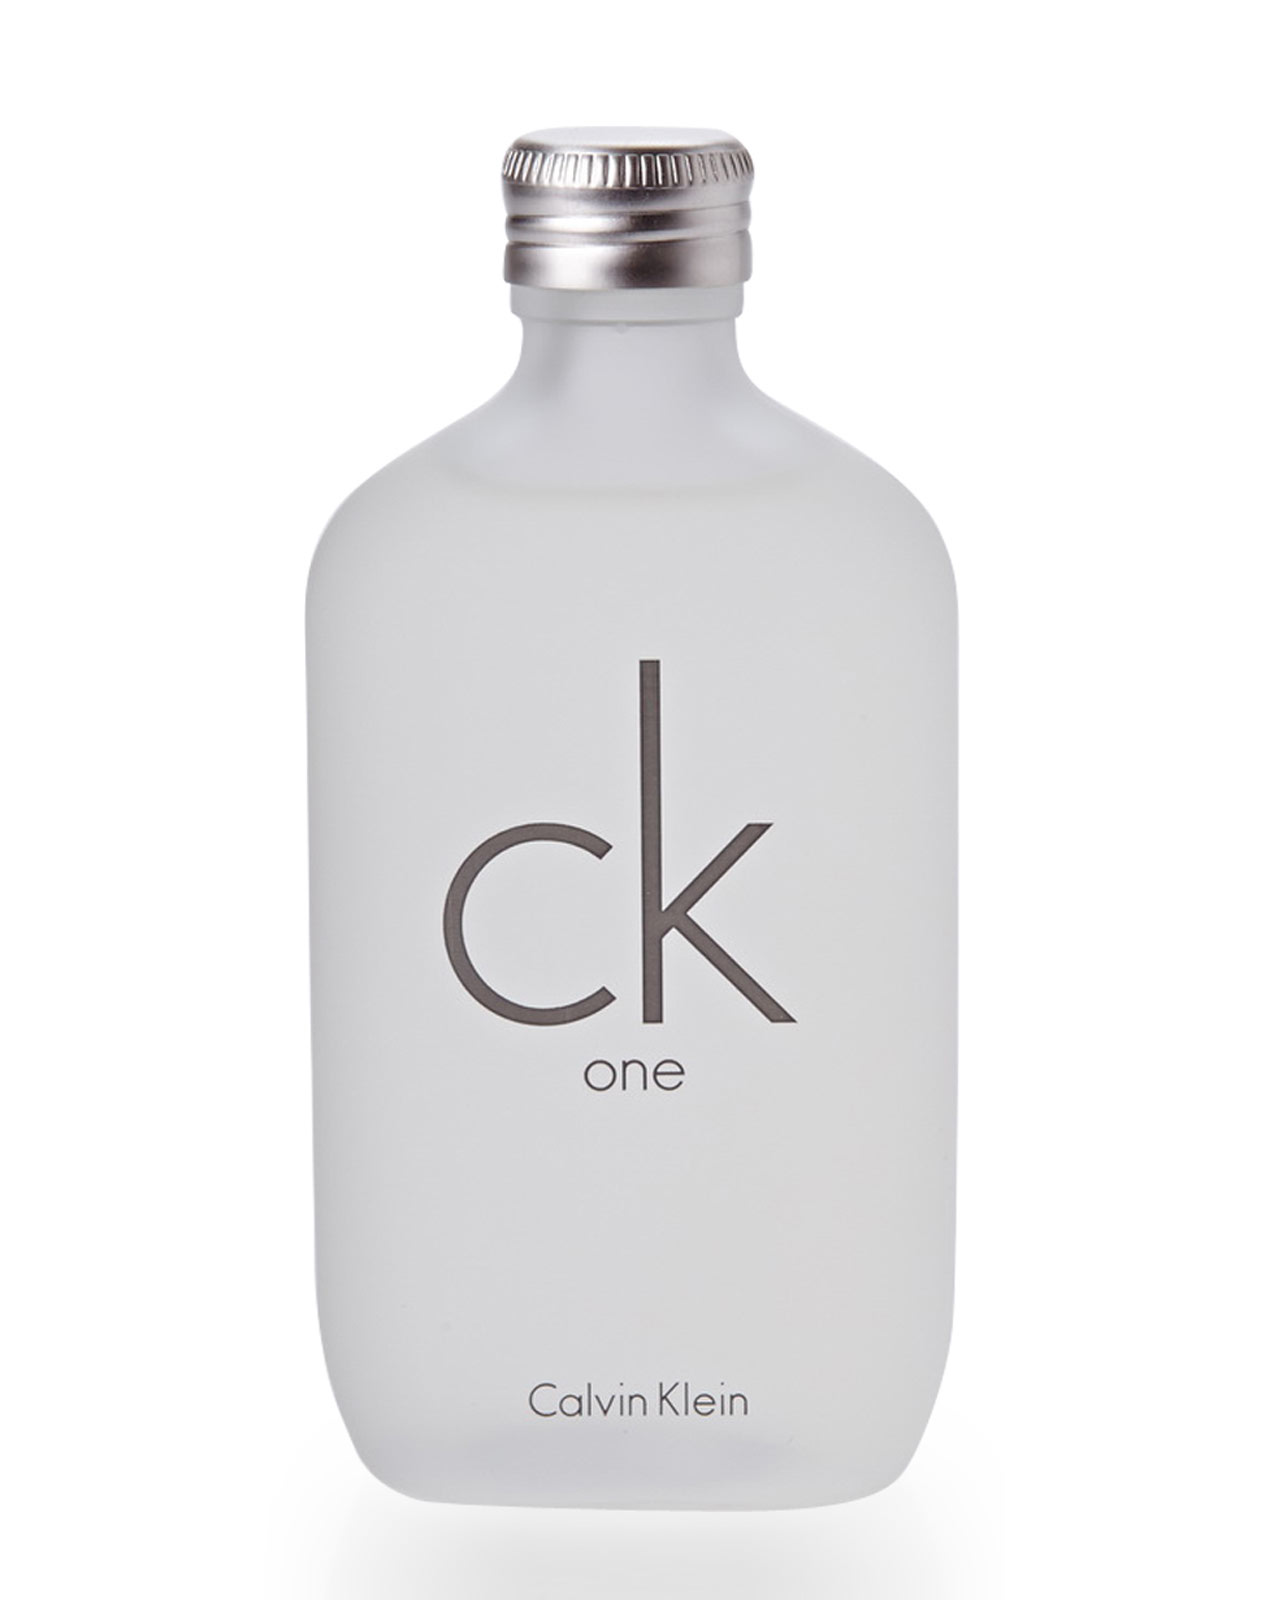 cK one Unisex Calvin Klein Cologne EDT Spray 6.7 oz / 200 ml New in ...